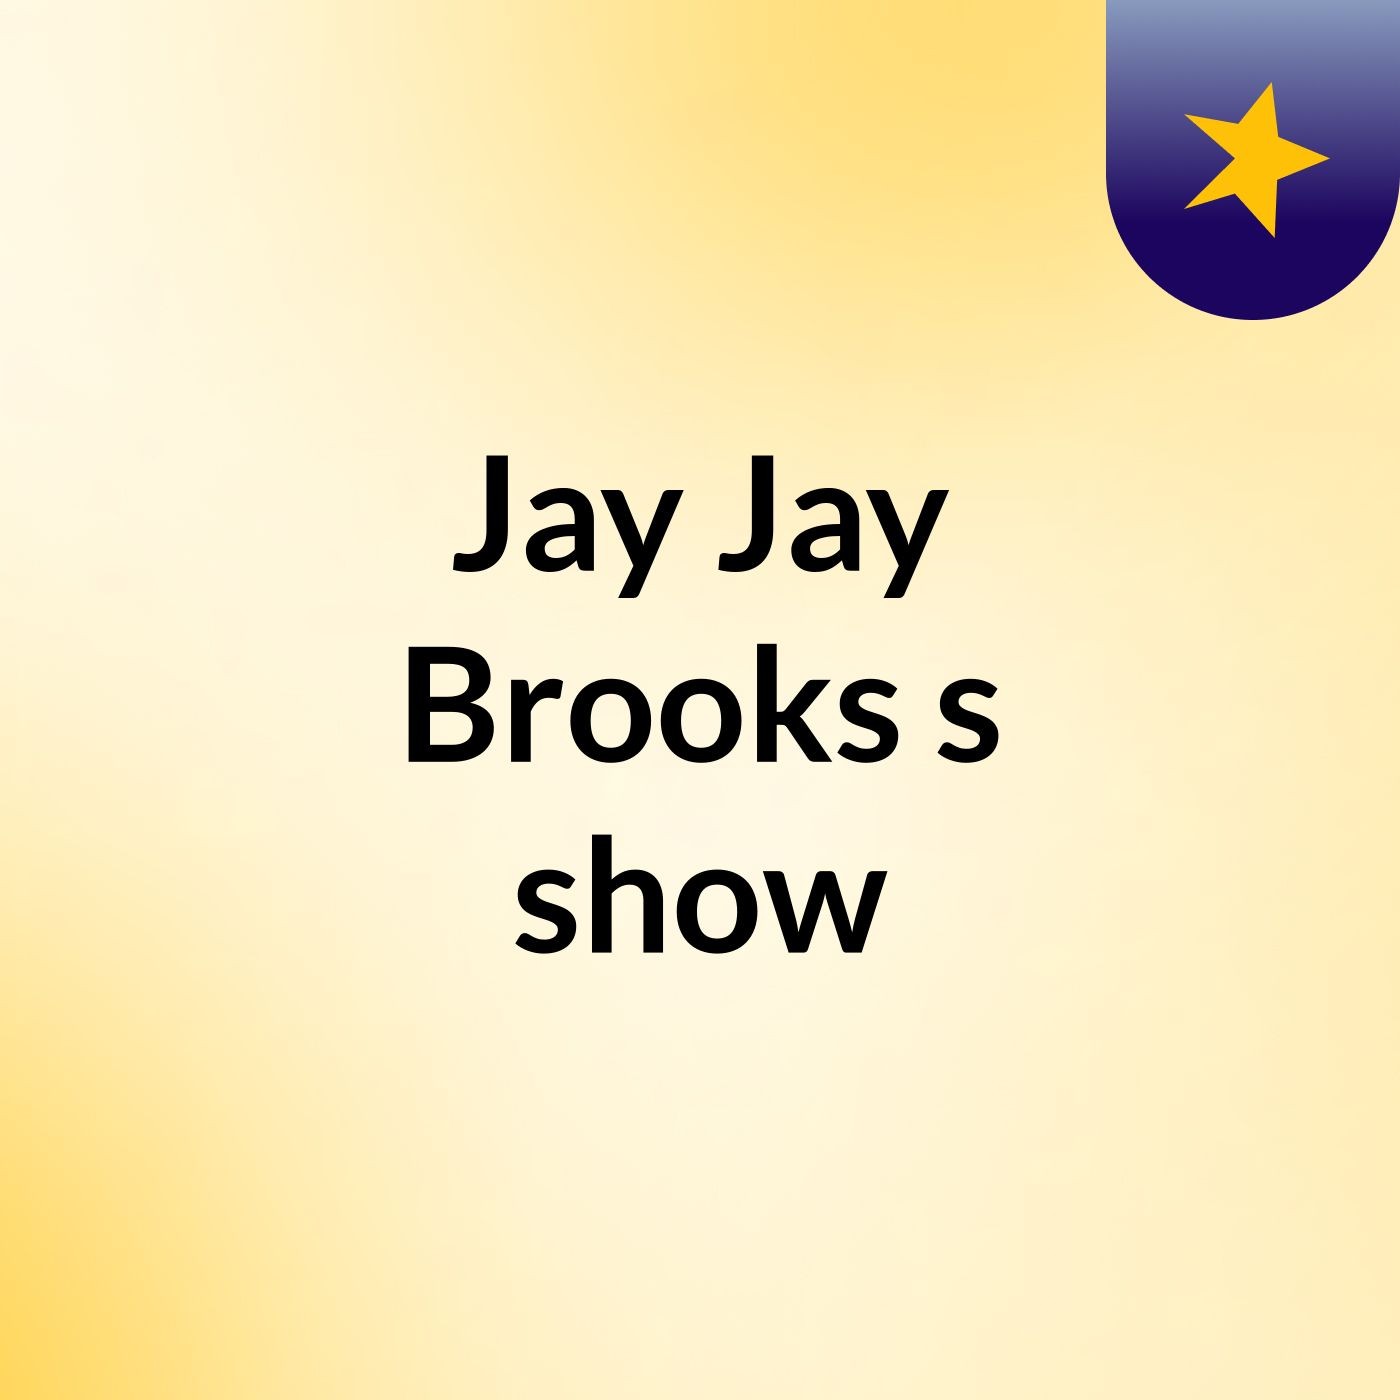 Jay Jay Brooks's show